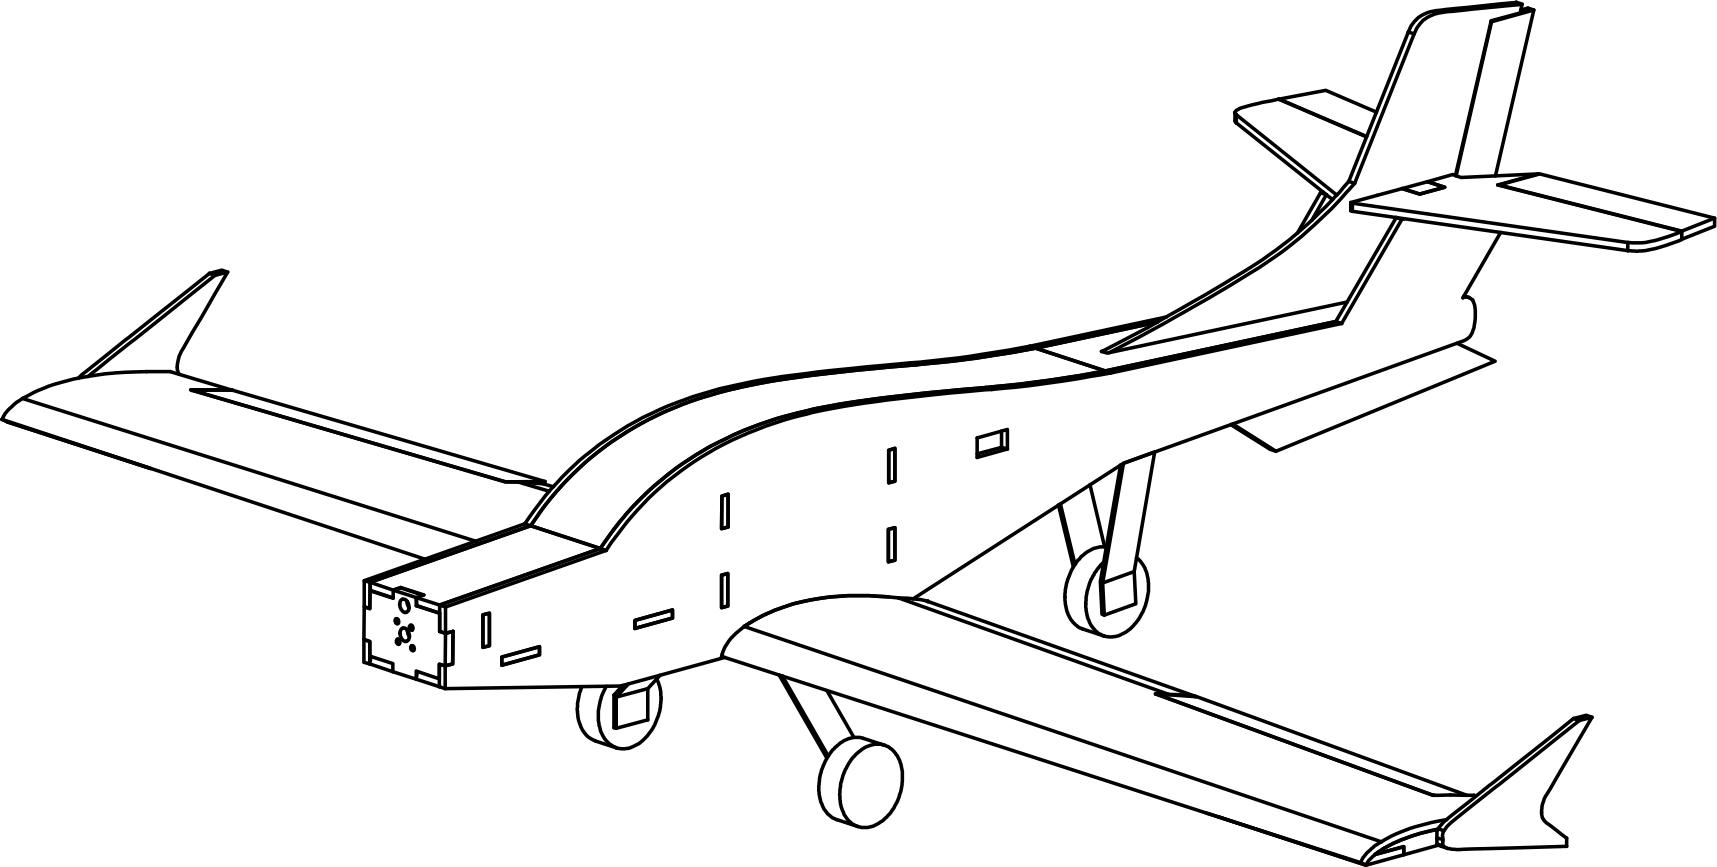 固定翼航模(c309a)